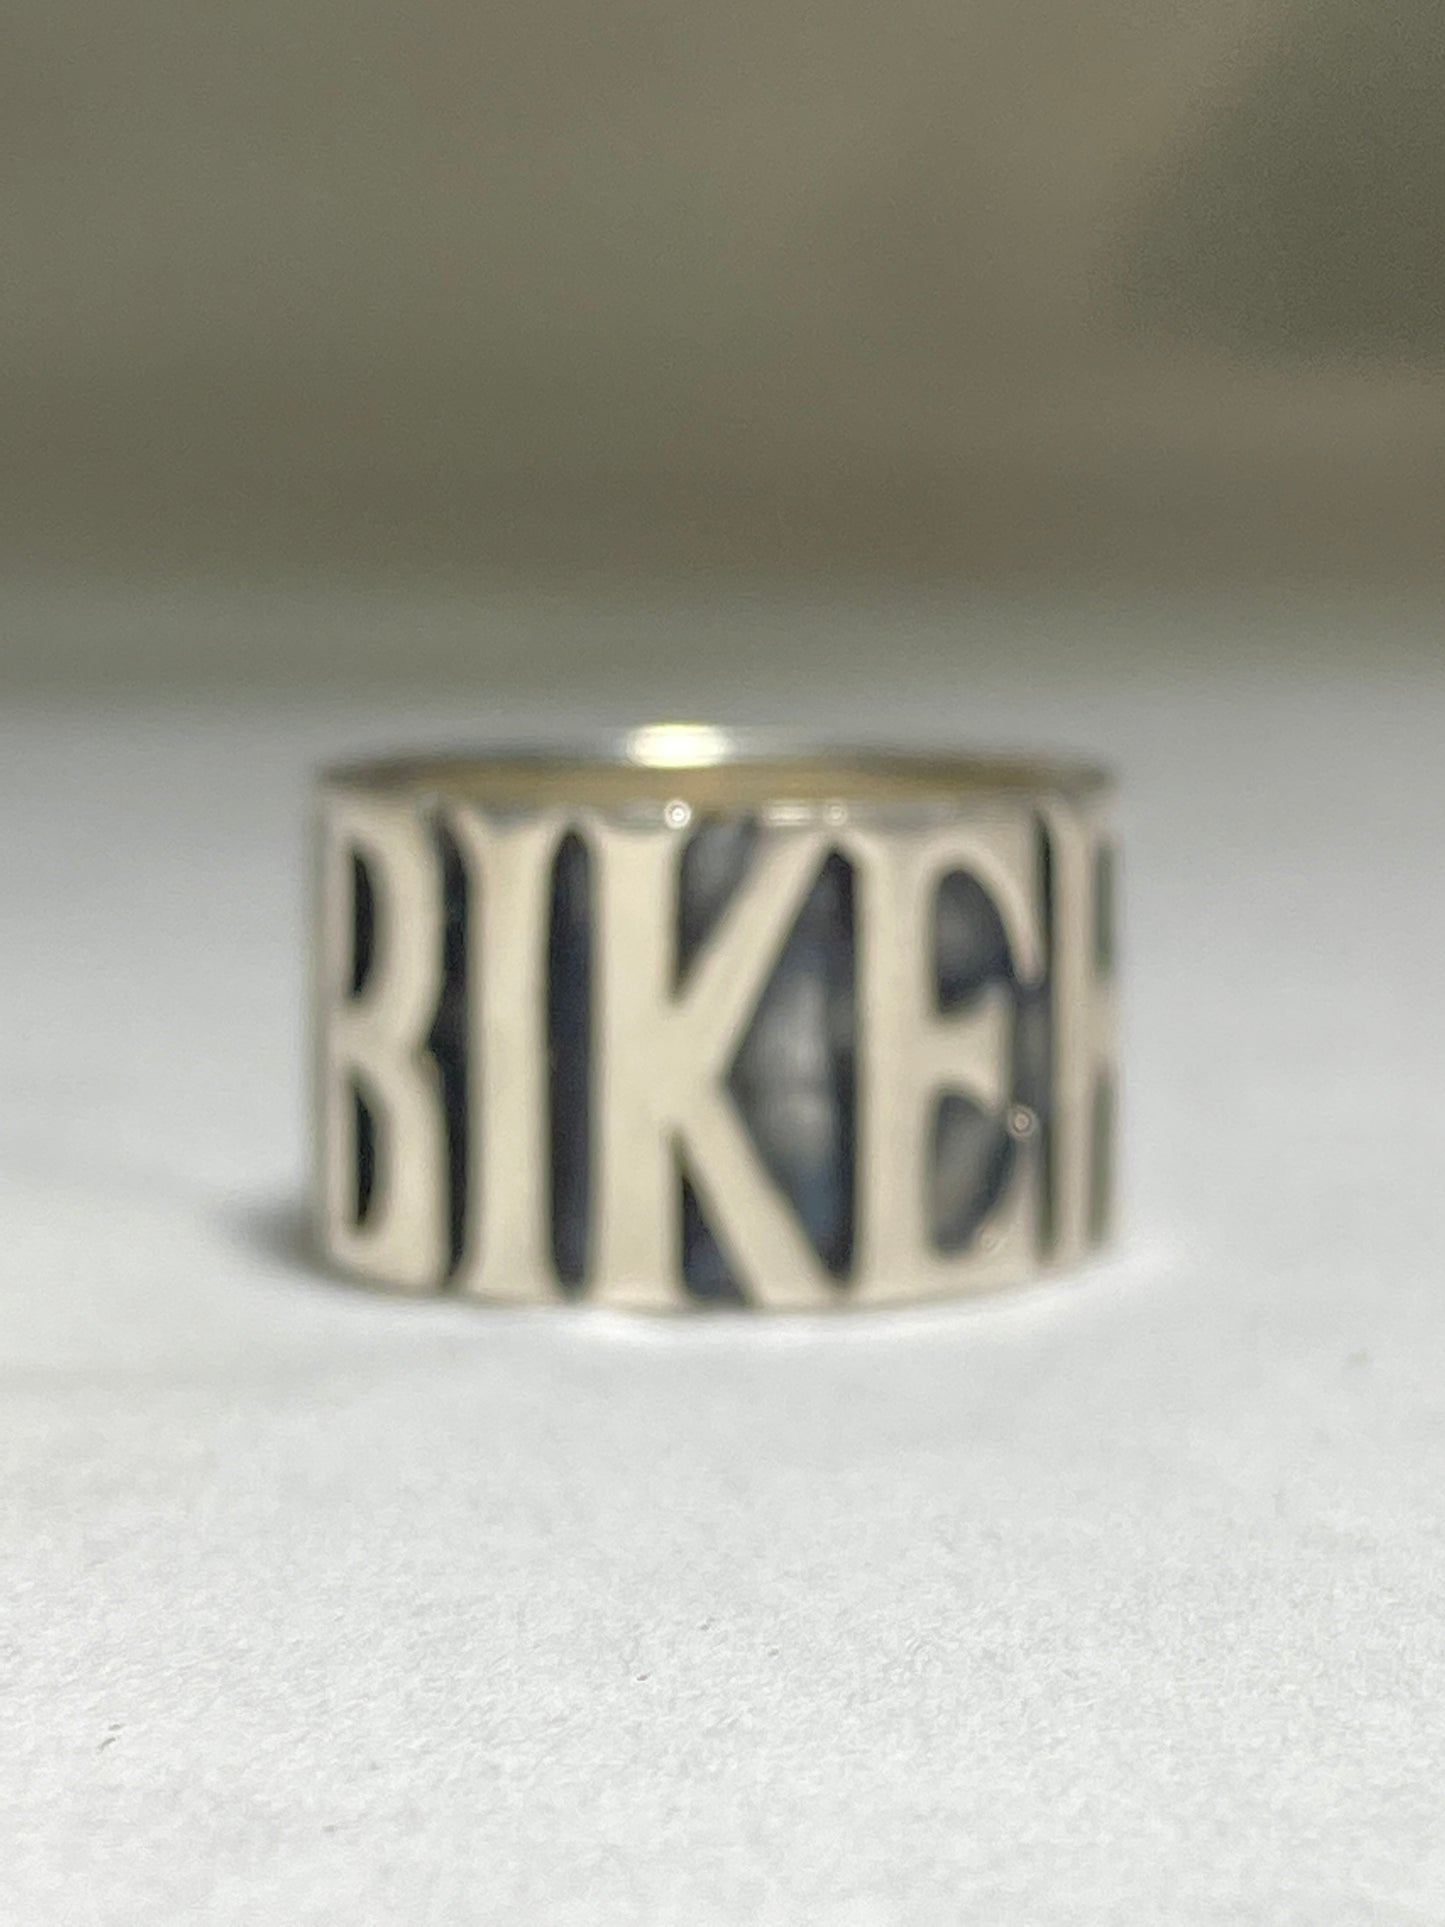 Biker ring BIKER band word Sterling Silver men women